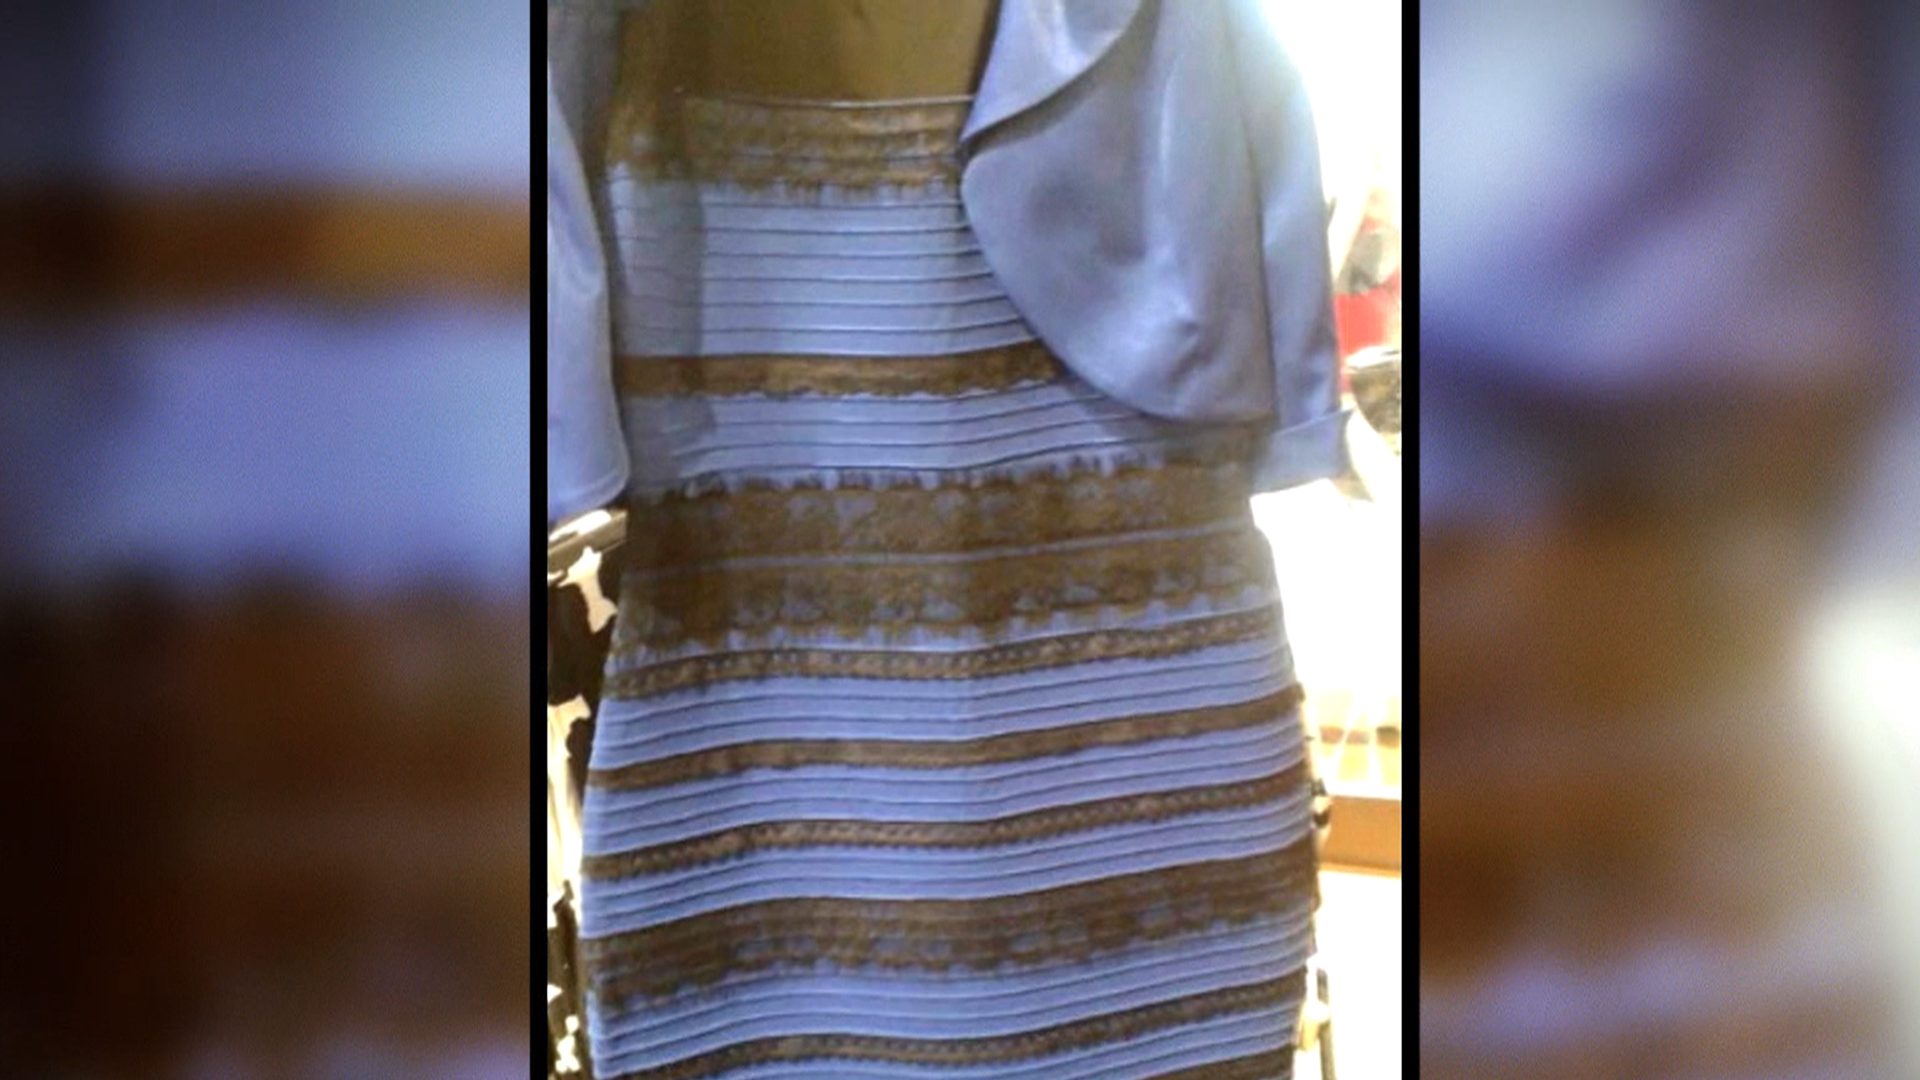 Платья разные цвета видят на одном